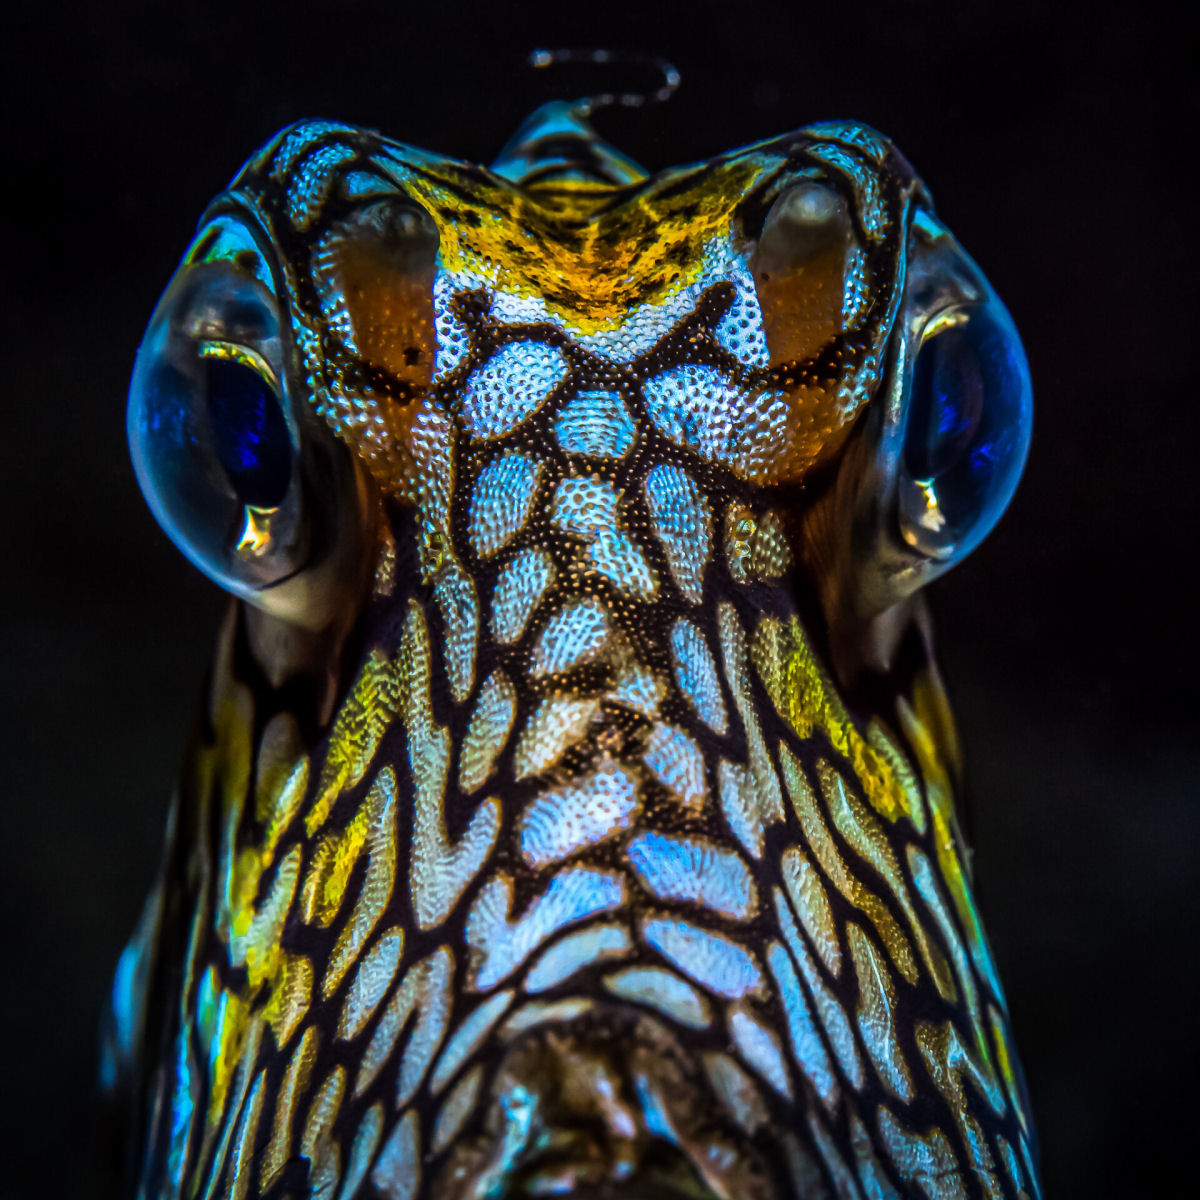 Fotógrafo registra espécies marinhas em vibrantes retratos subaquáticos 02